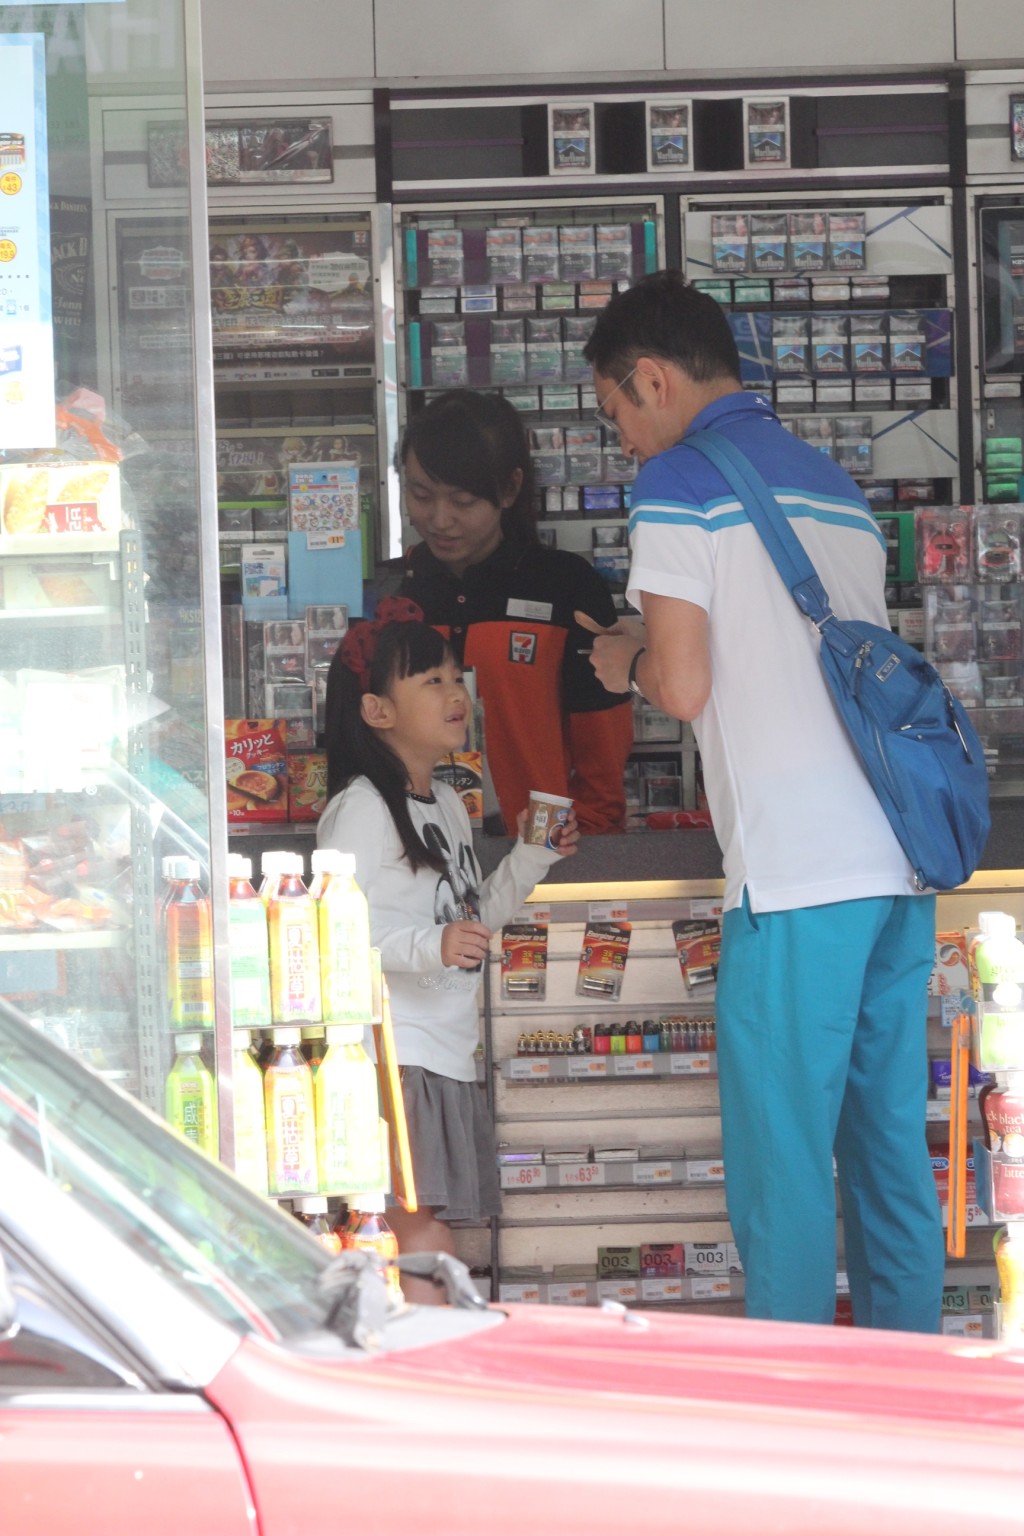 吳啟華在2014年曾被拍到親自湊女到便利店買雪糕。